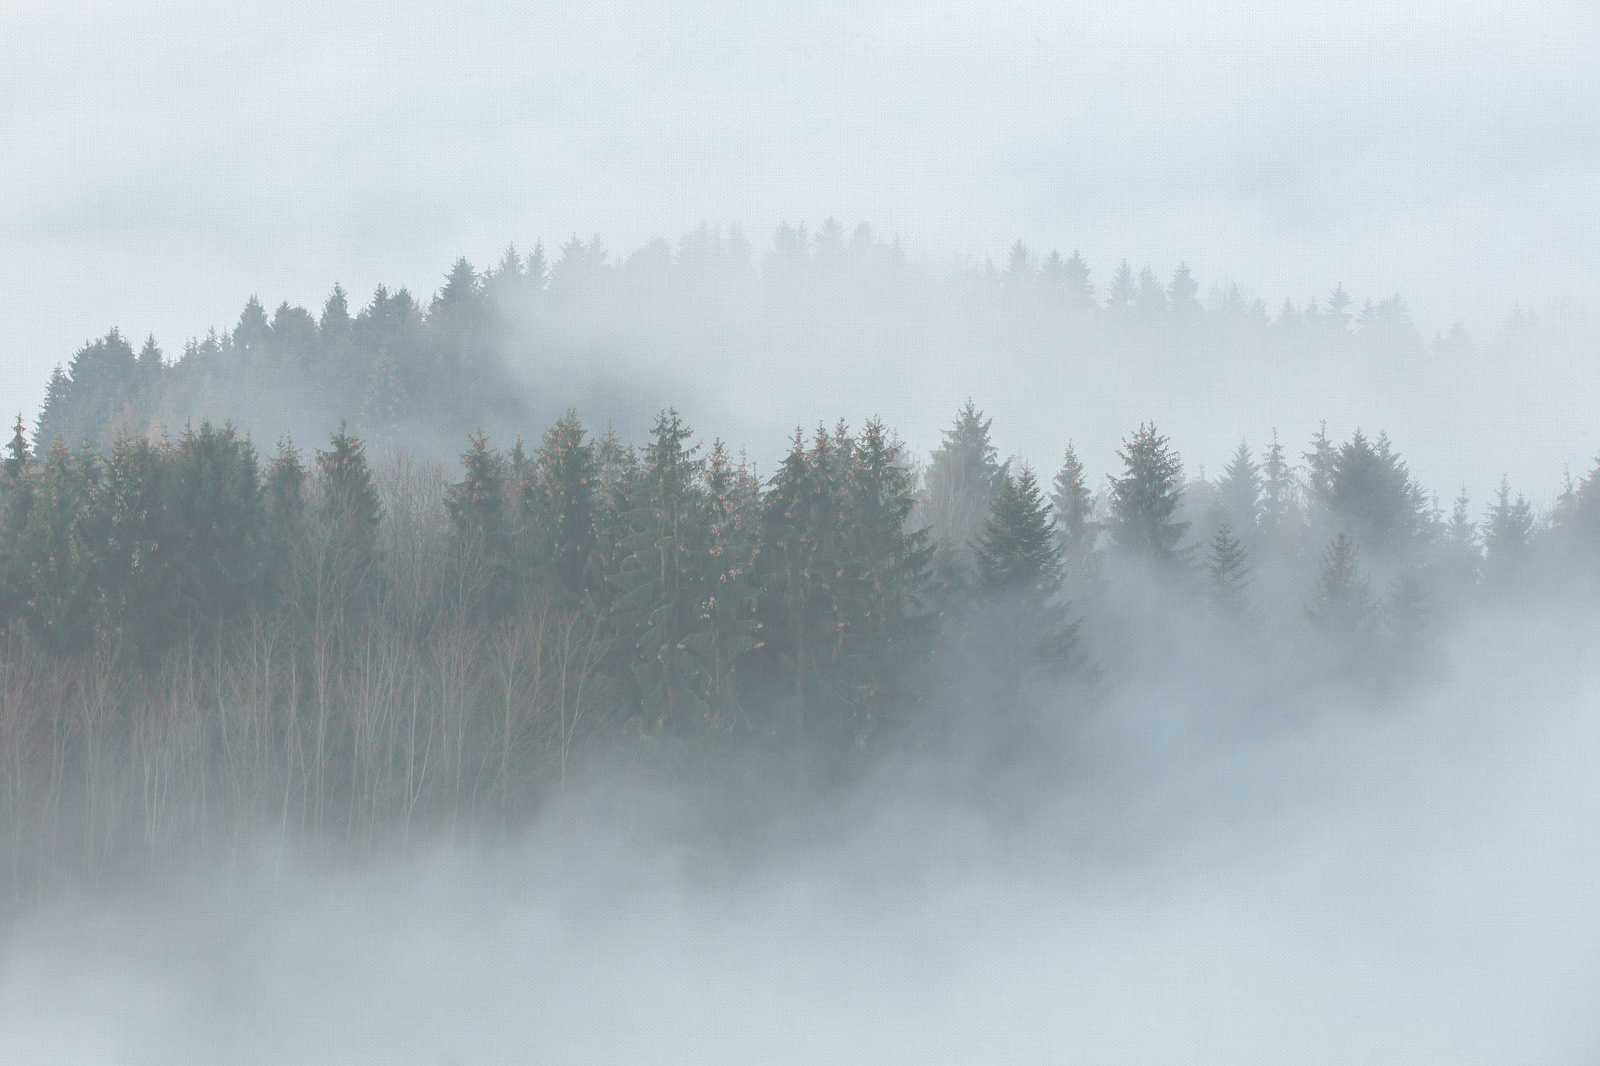             Lienzo con bosque misterioso en la niebla - 0,90 m x 0,60 m
        